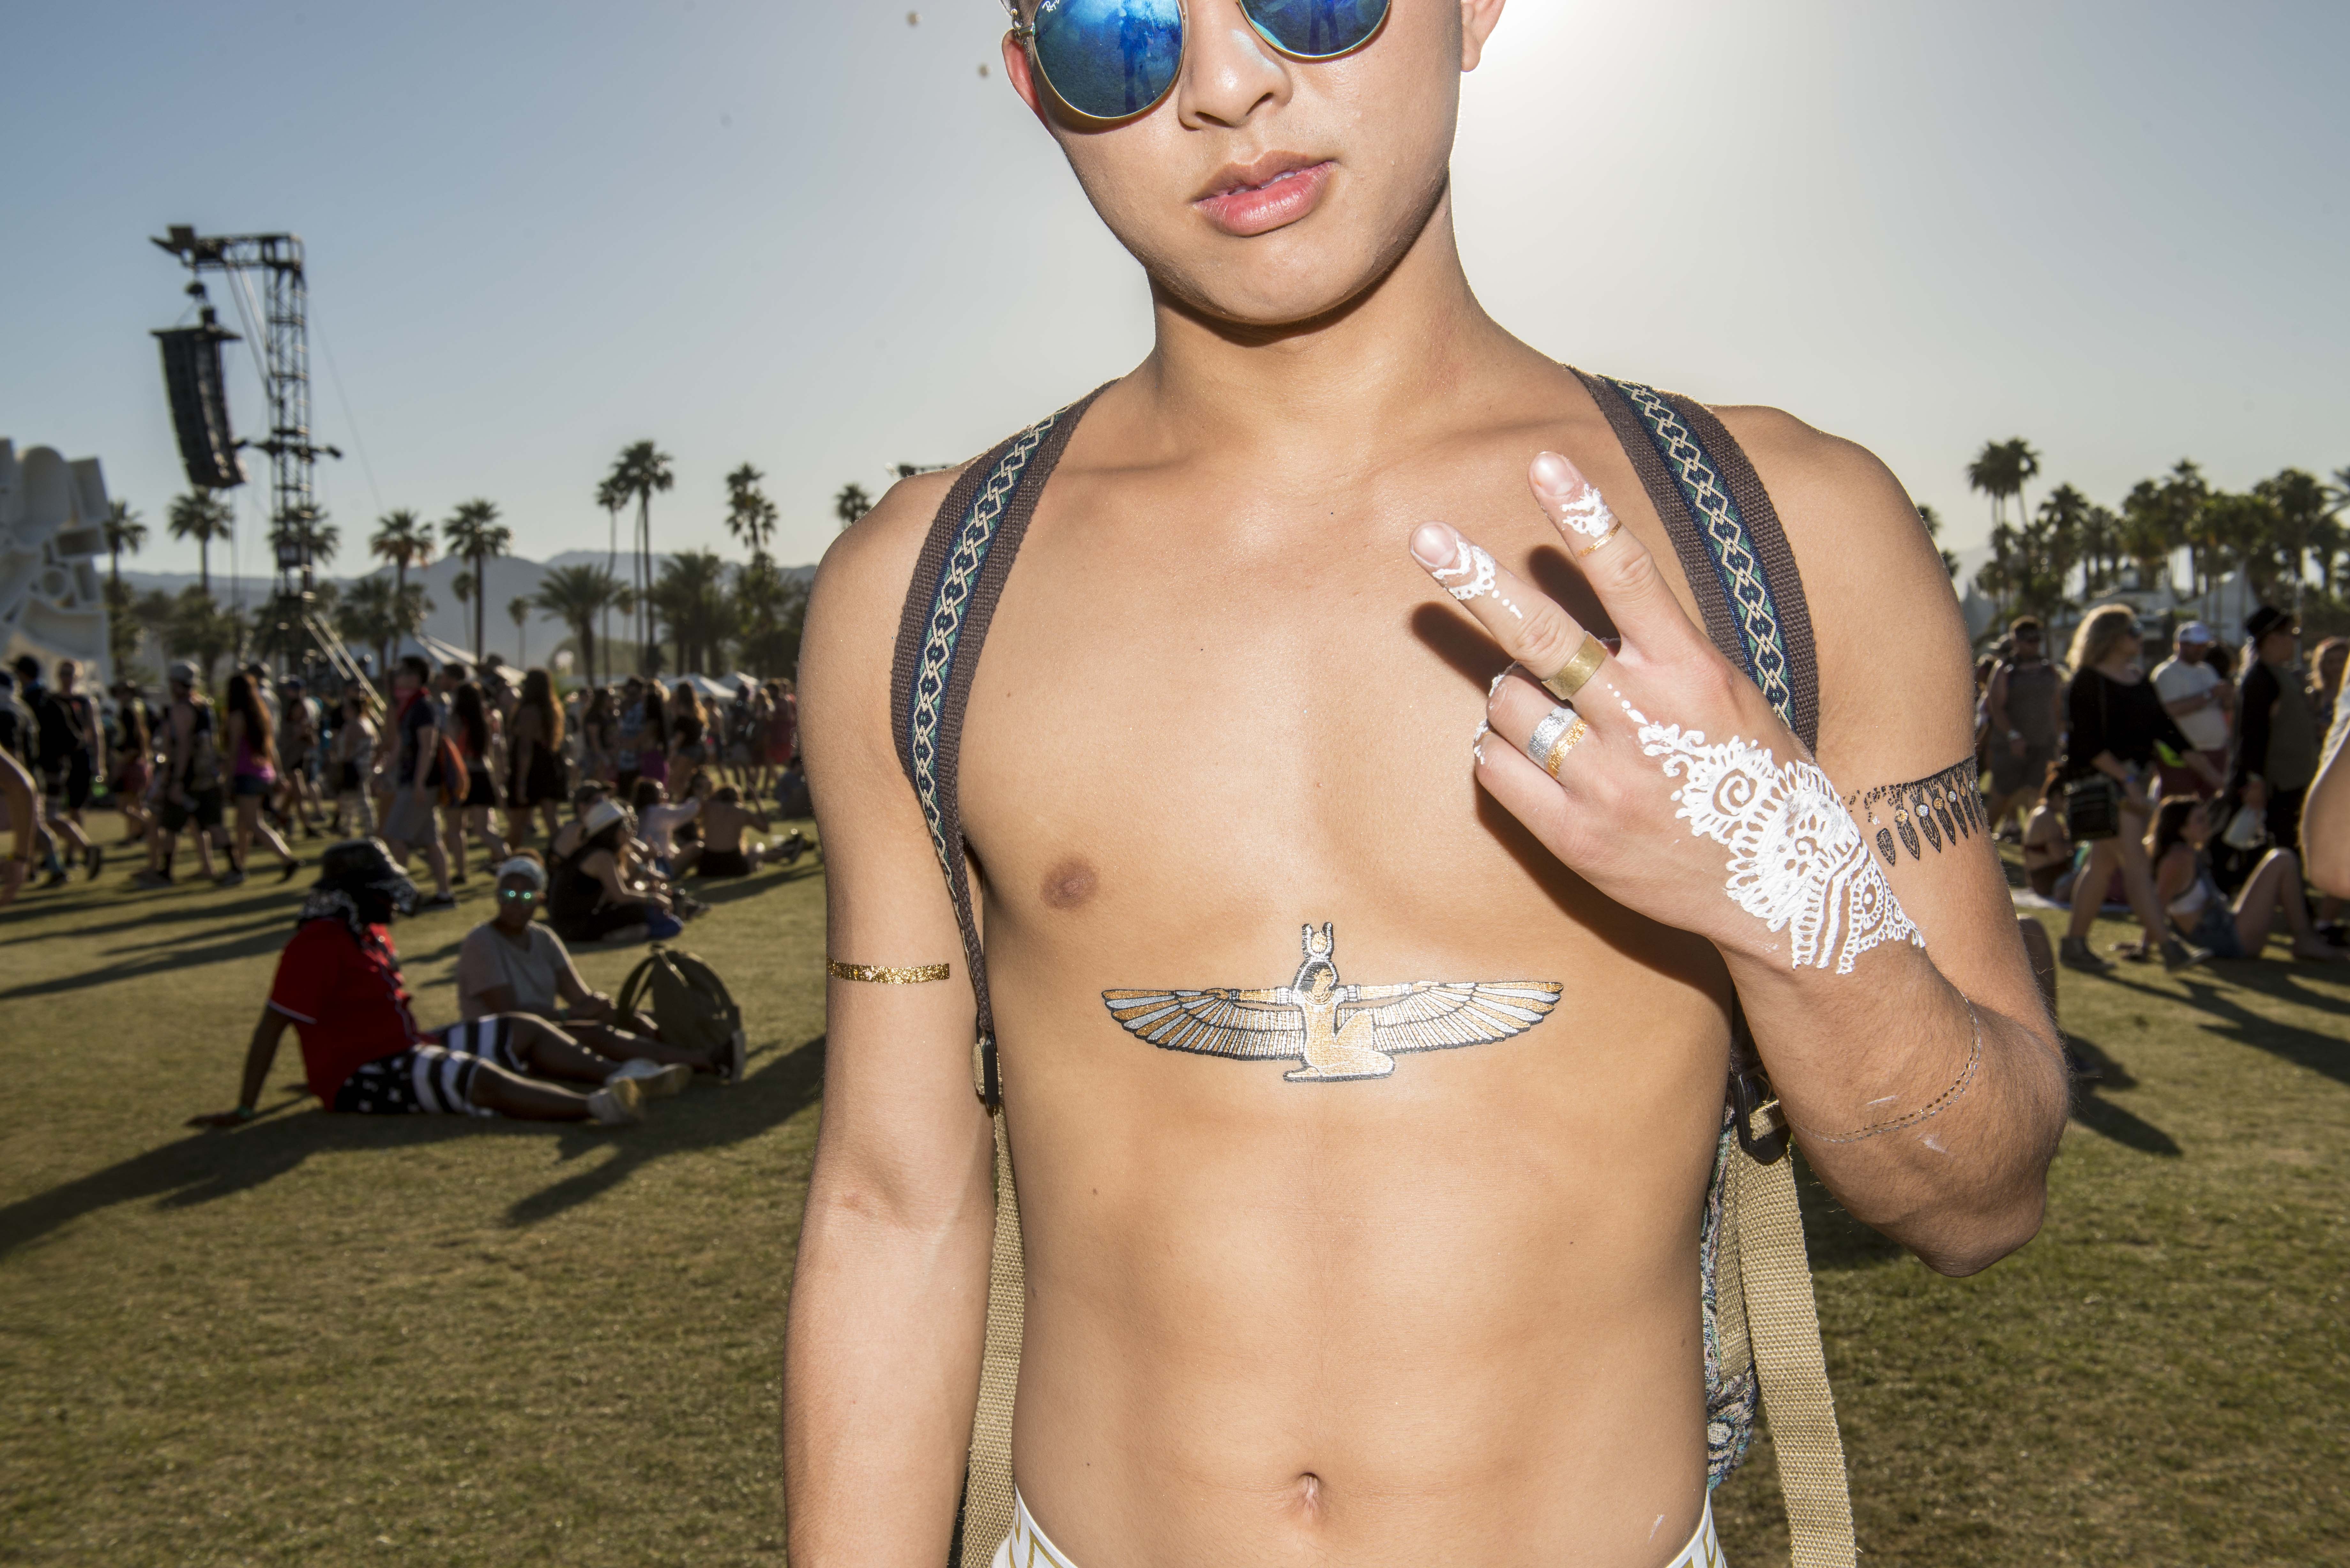 This guy flaunts his flash tattoos at Coachella. - SHANE LOPES